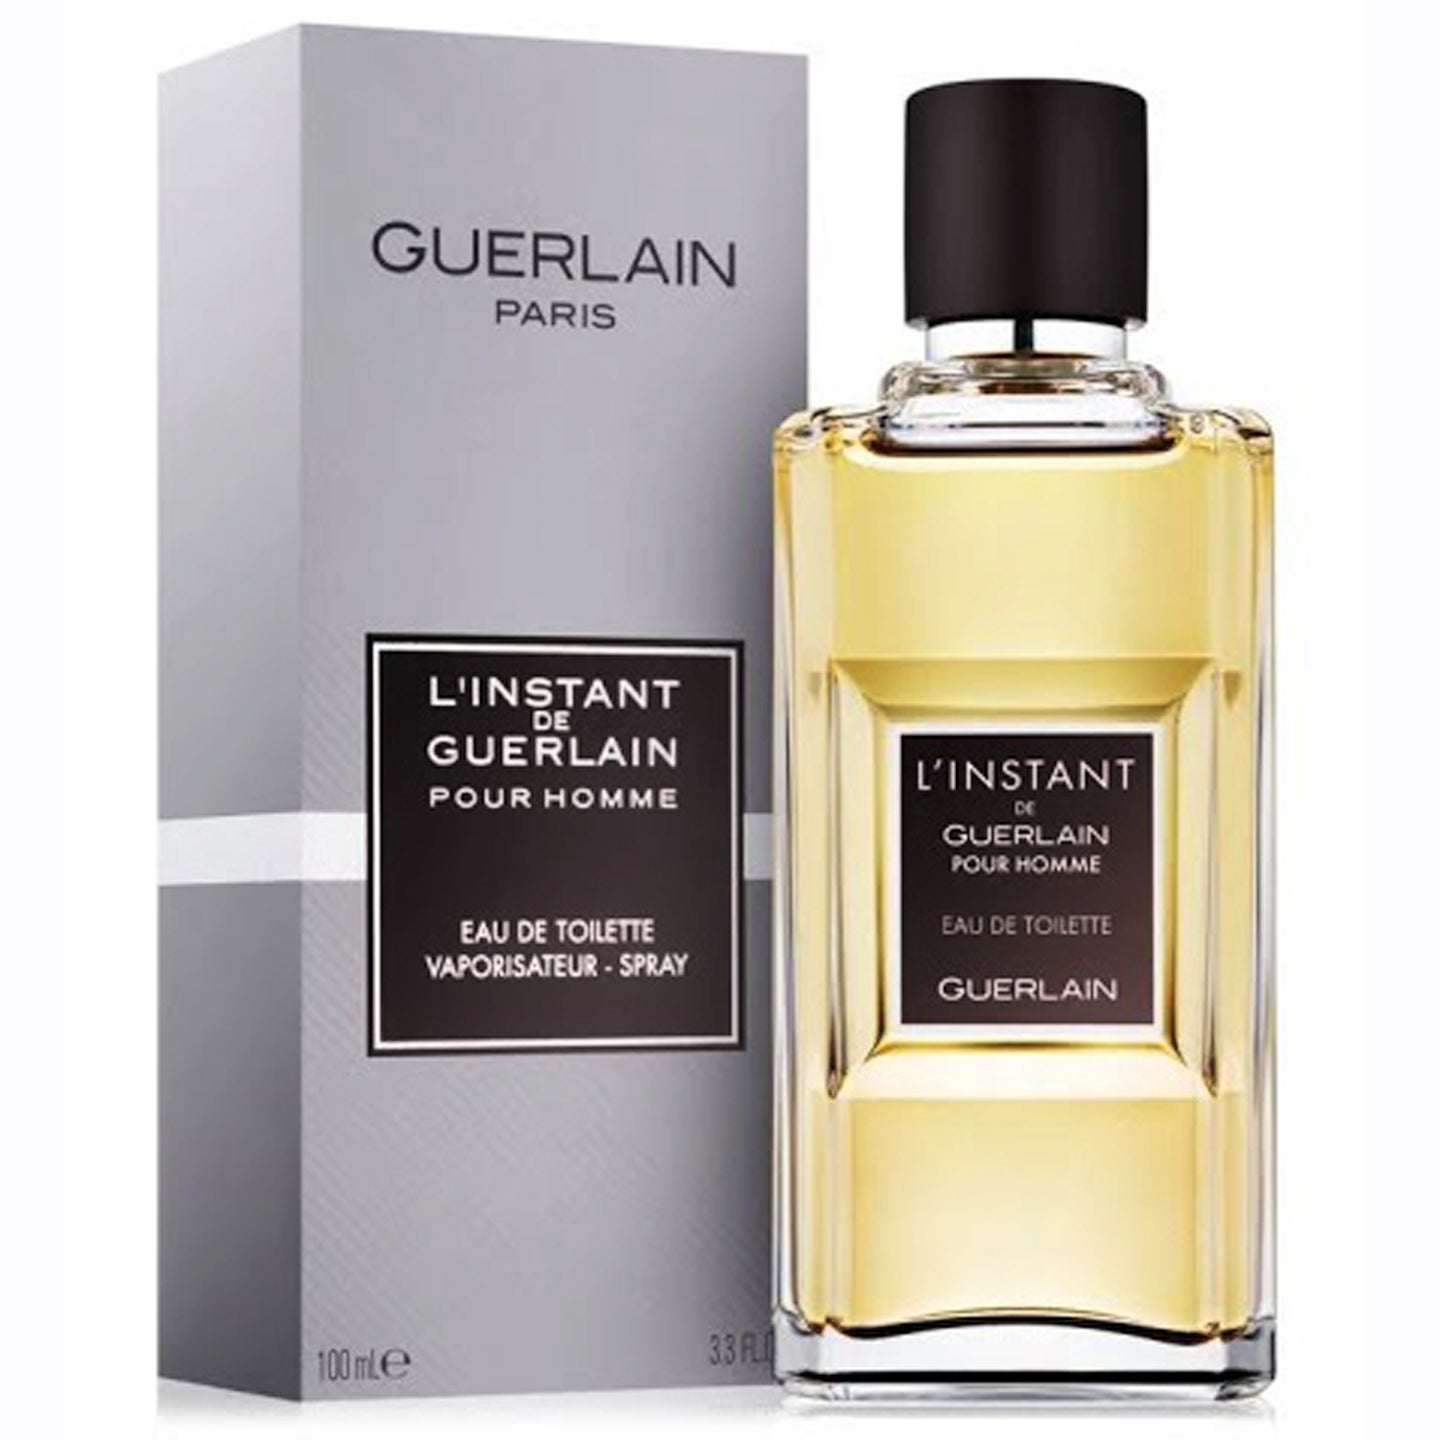 Guerlain L'Instant De Guerlain Pour Homme Eau de Toilette Spray 100 ml for Men